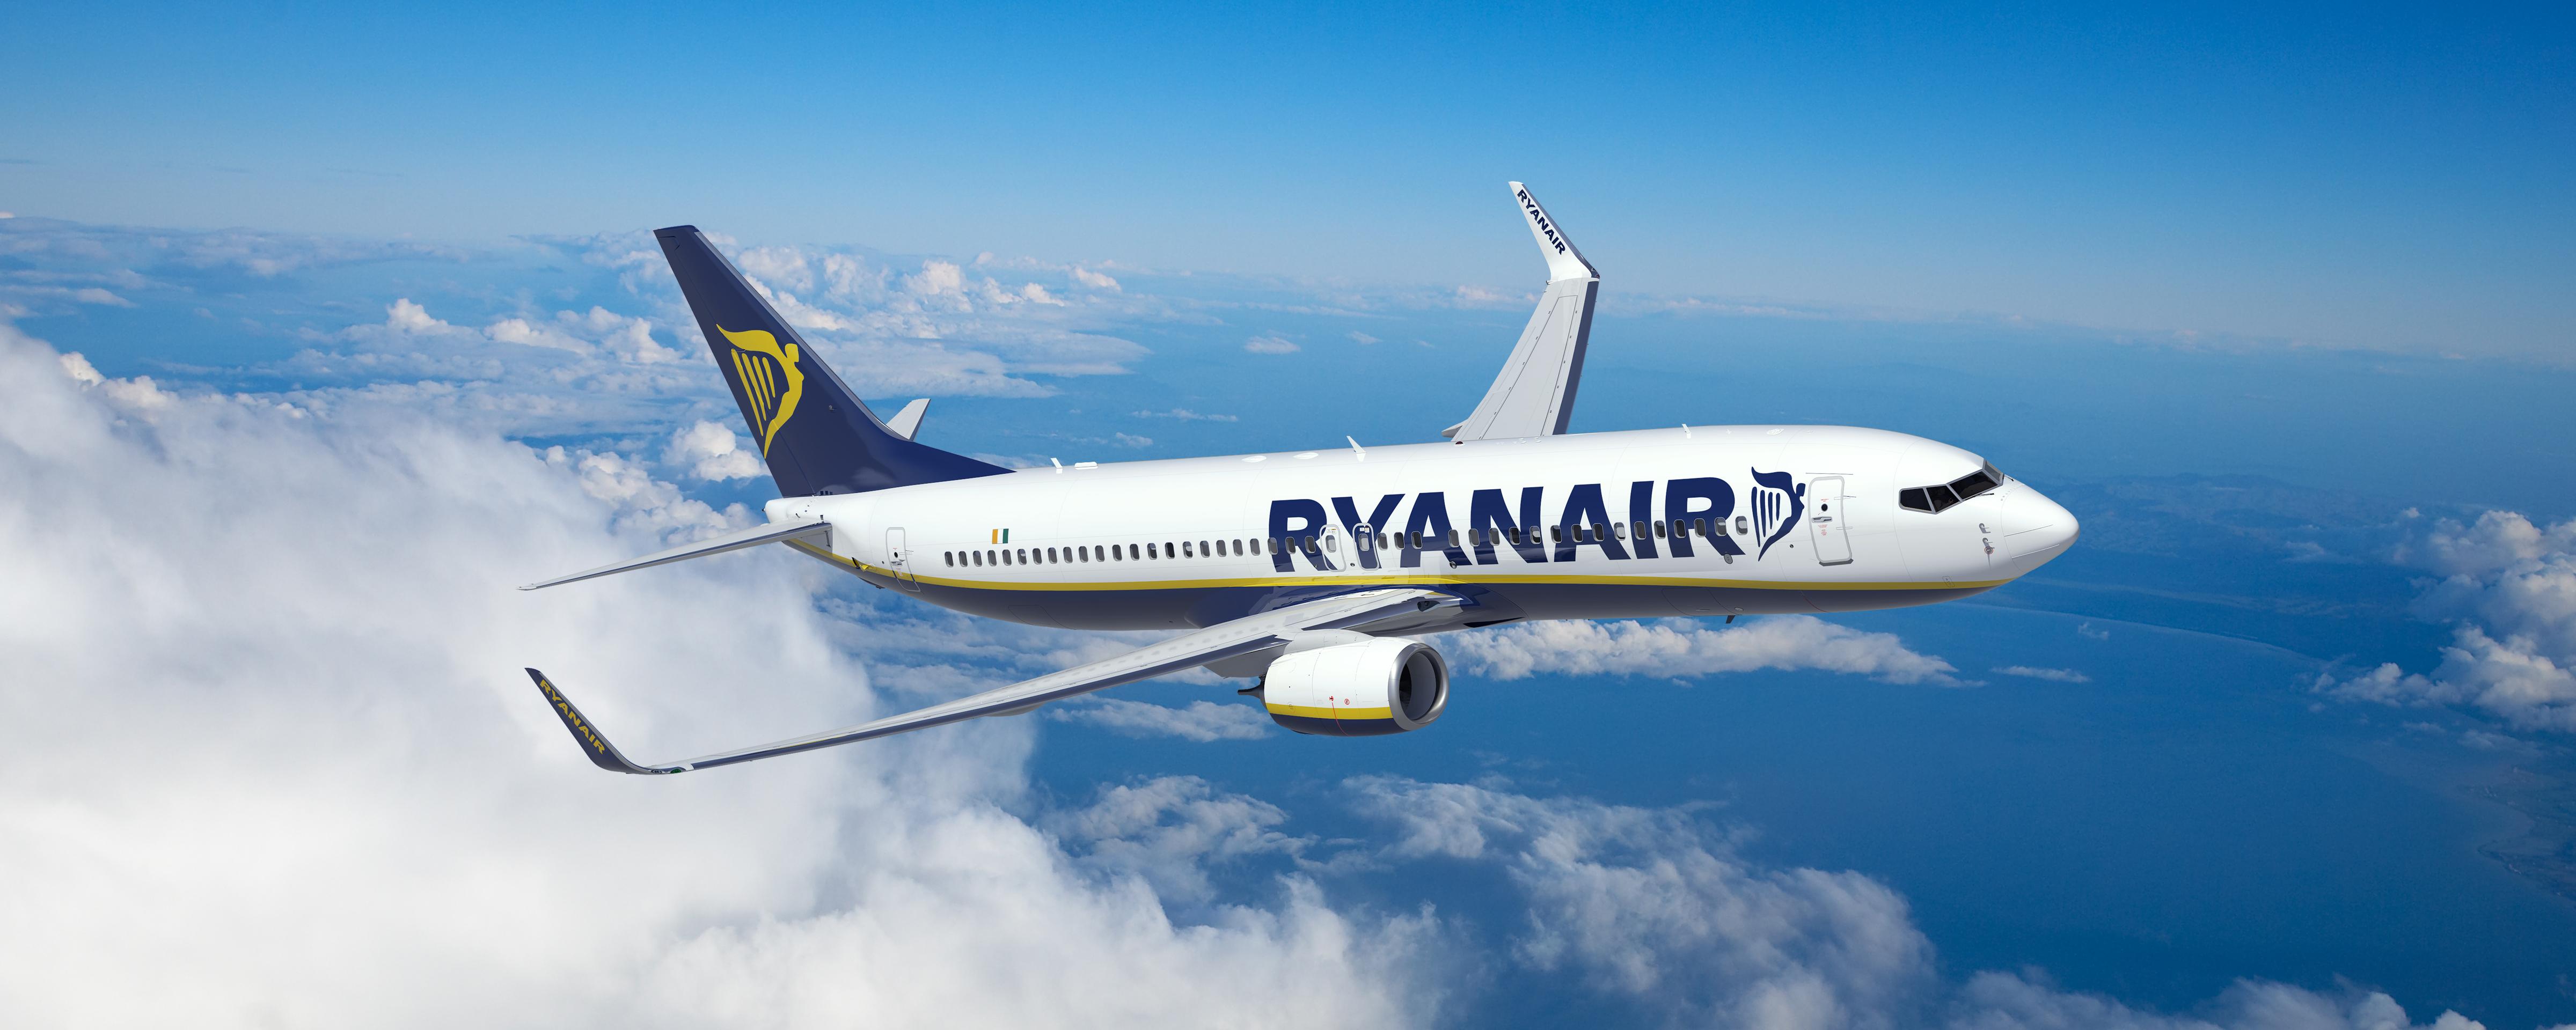 Ryanair Lancia Due Nuove Rotte Dall’italia Al Portogallo